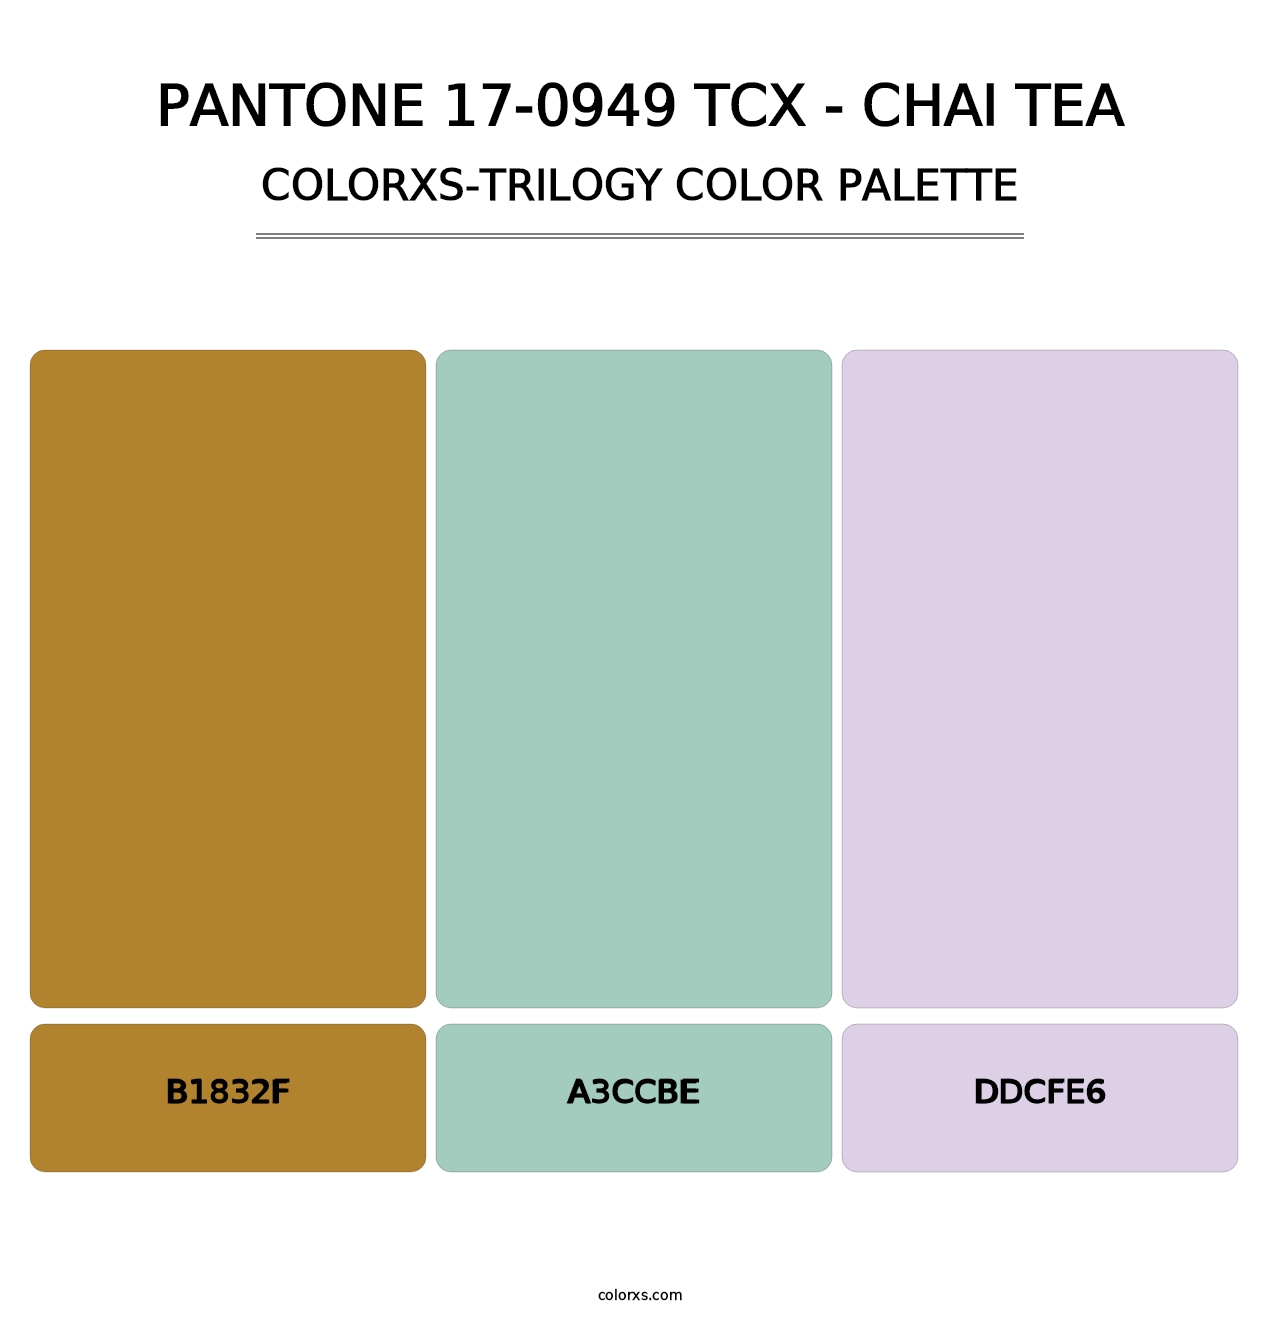 PANTONE 17-0949 TCX - Chai Tea - Colorxs Trilogy Palette